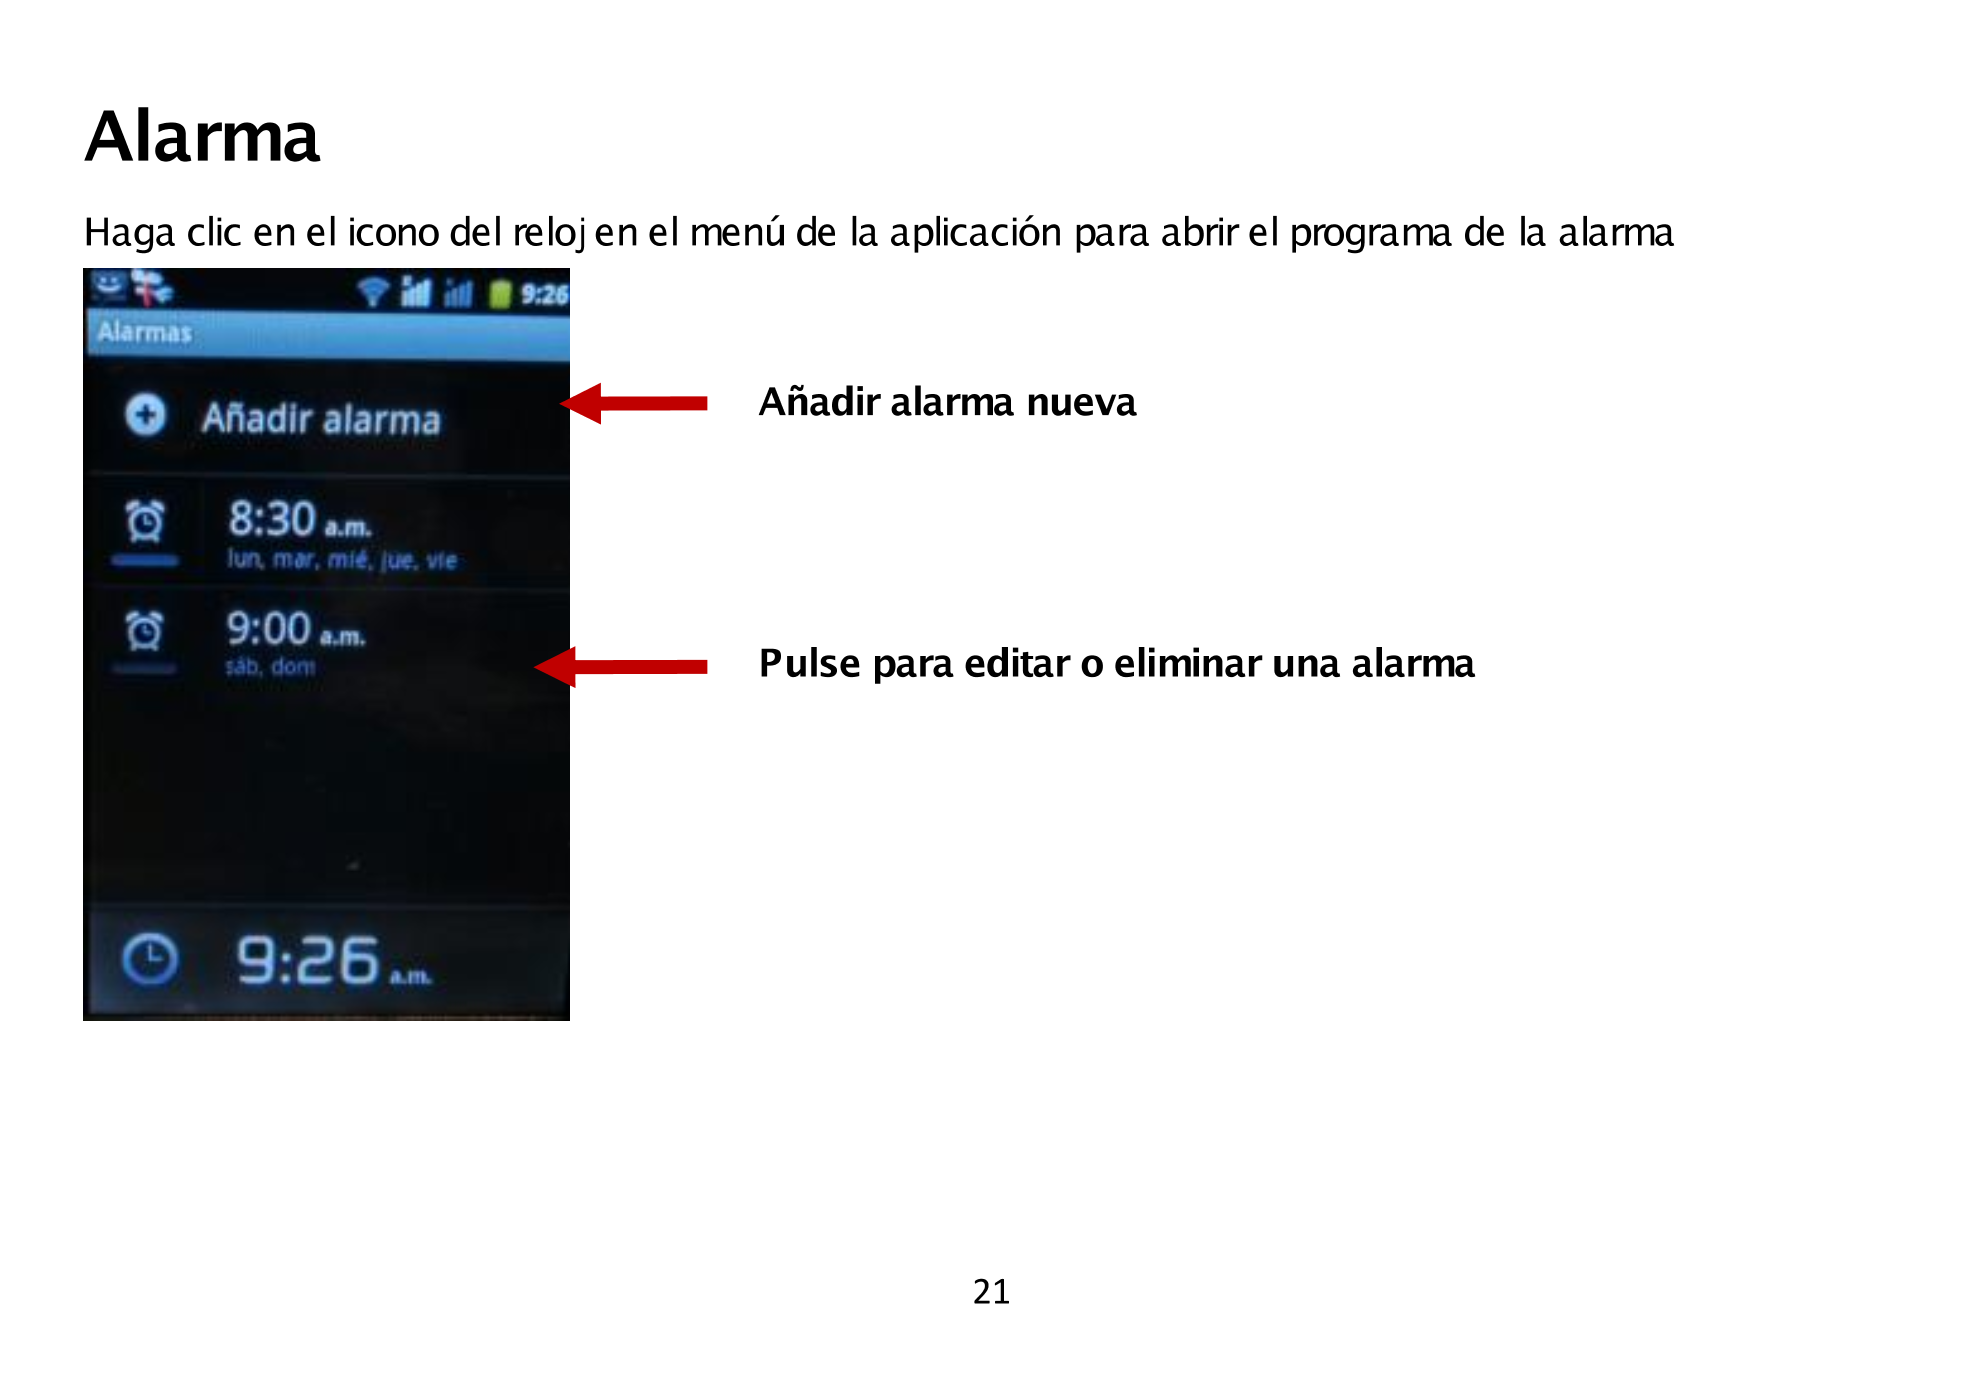 Alarma 
Haga clic en el icono del reloj en el menú de la aplicación  para abrir el programa de la alarma  
Añadir alarma  nueva 